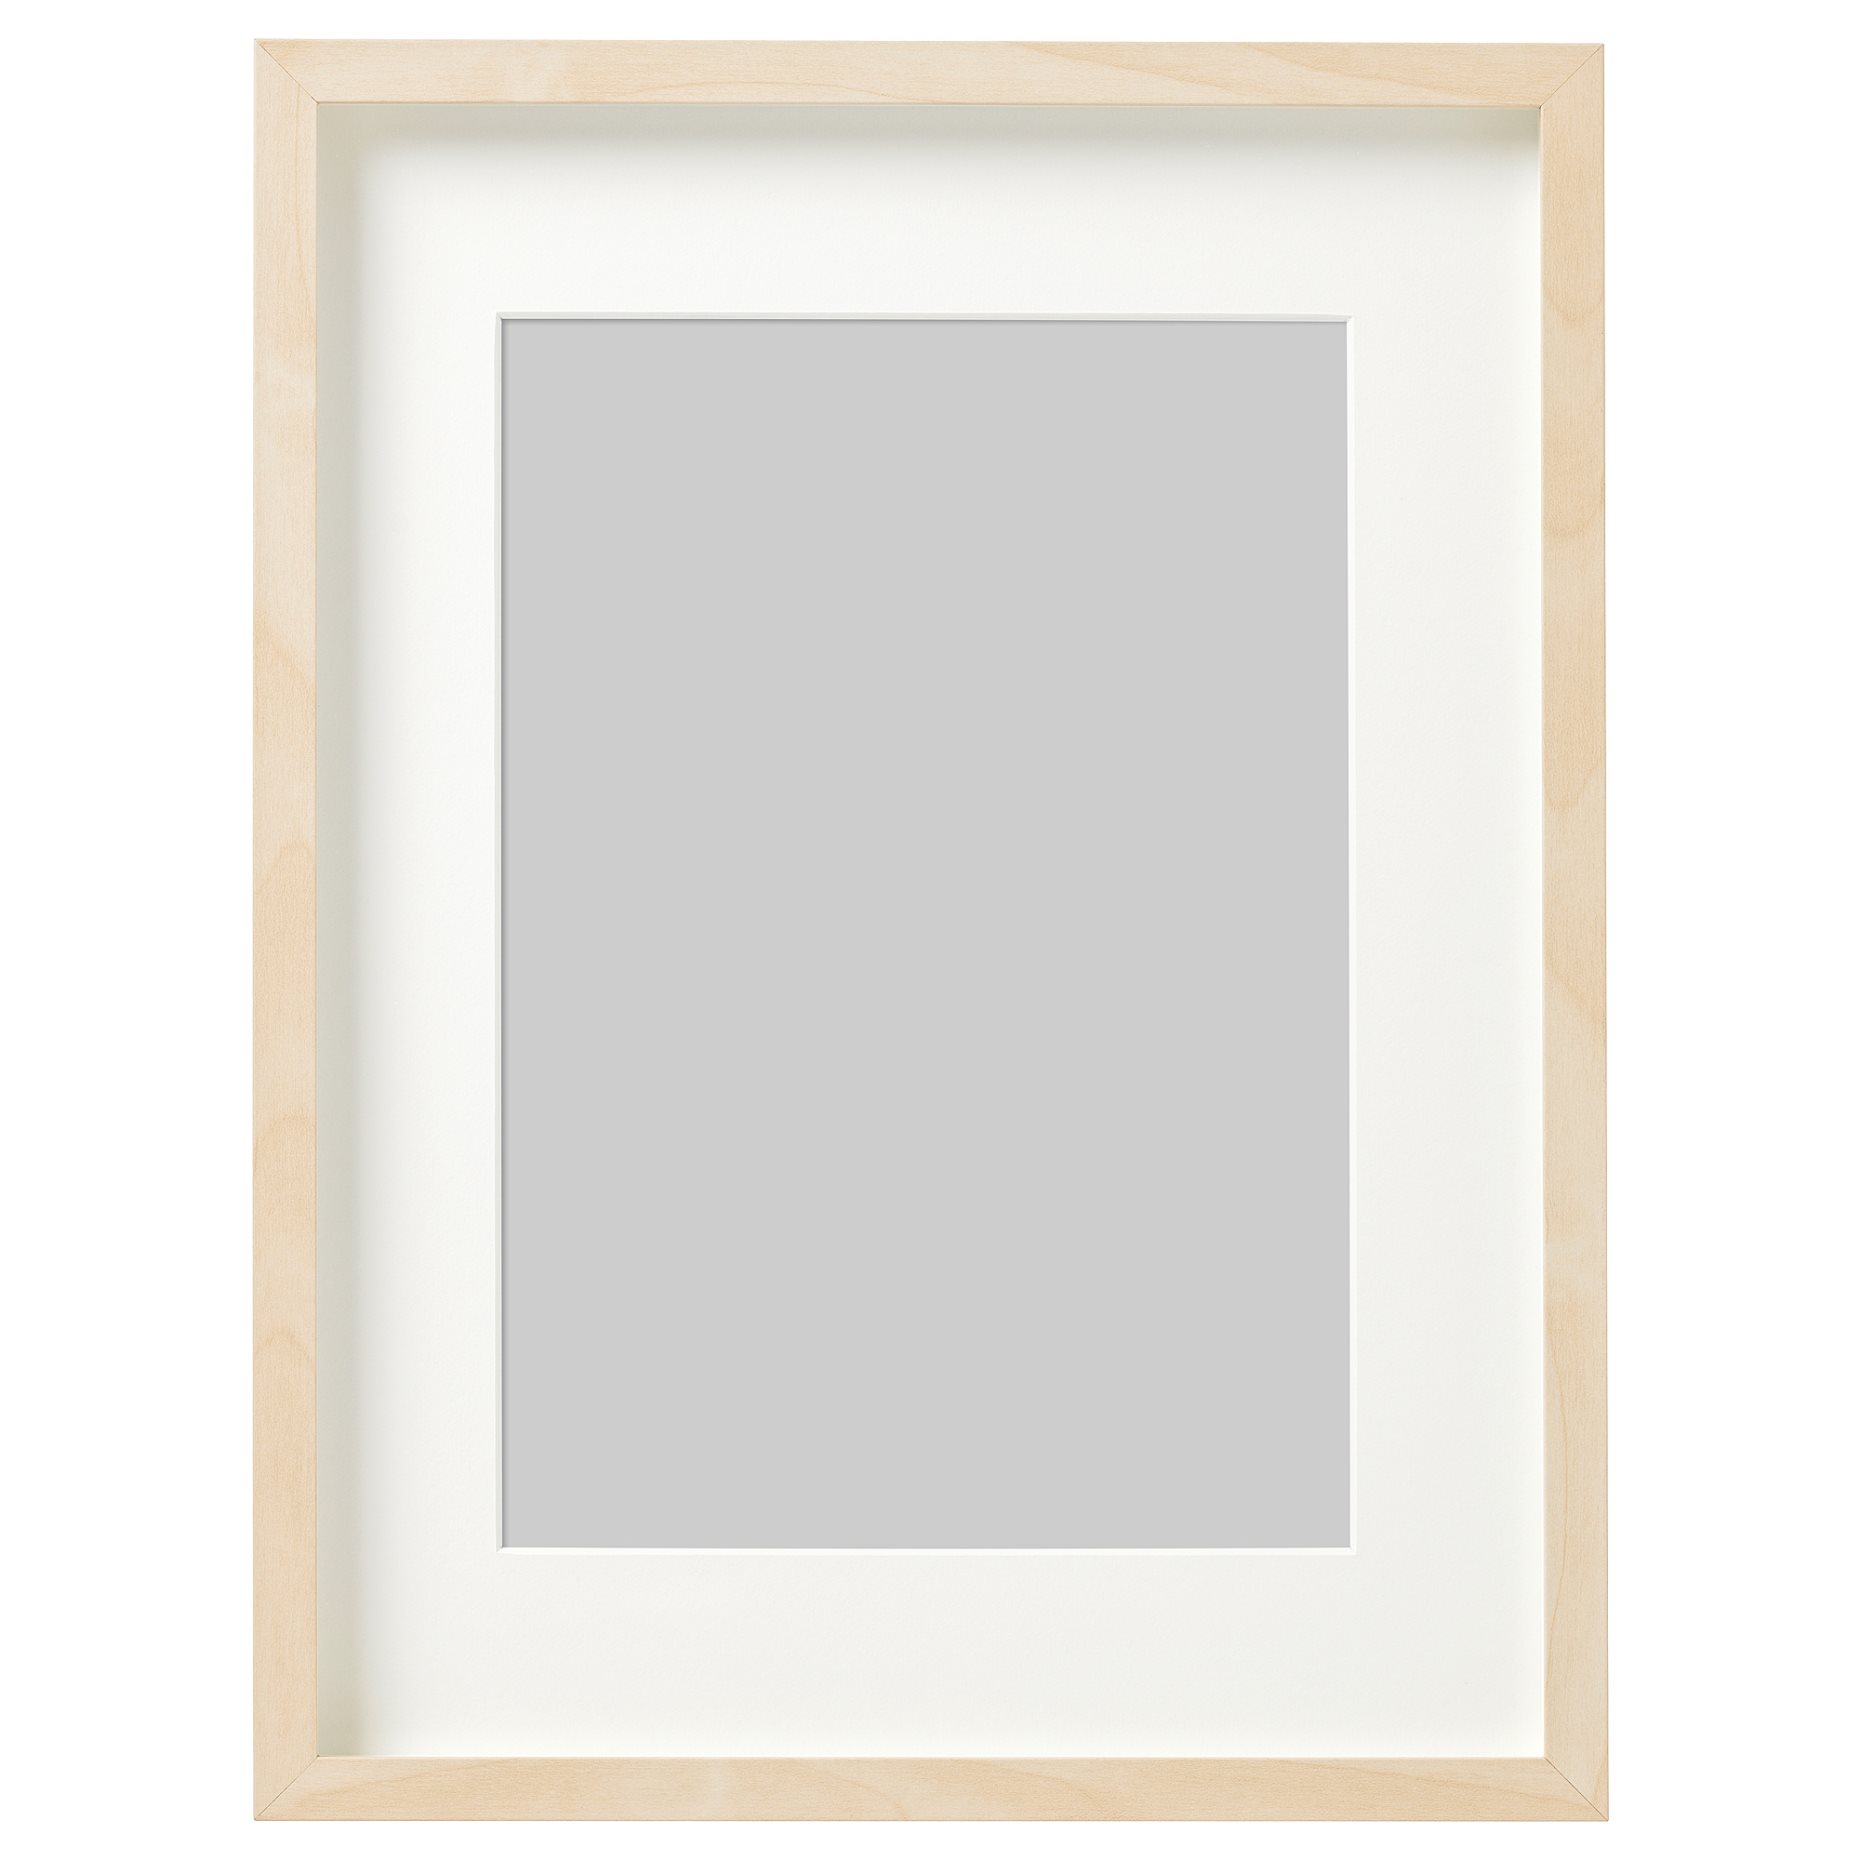 HOVSTA, frame, 30x40 cm, 603.657.61